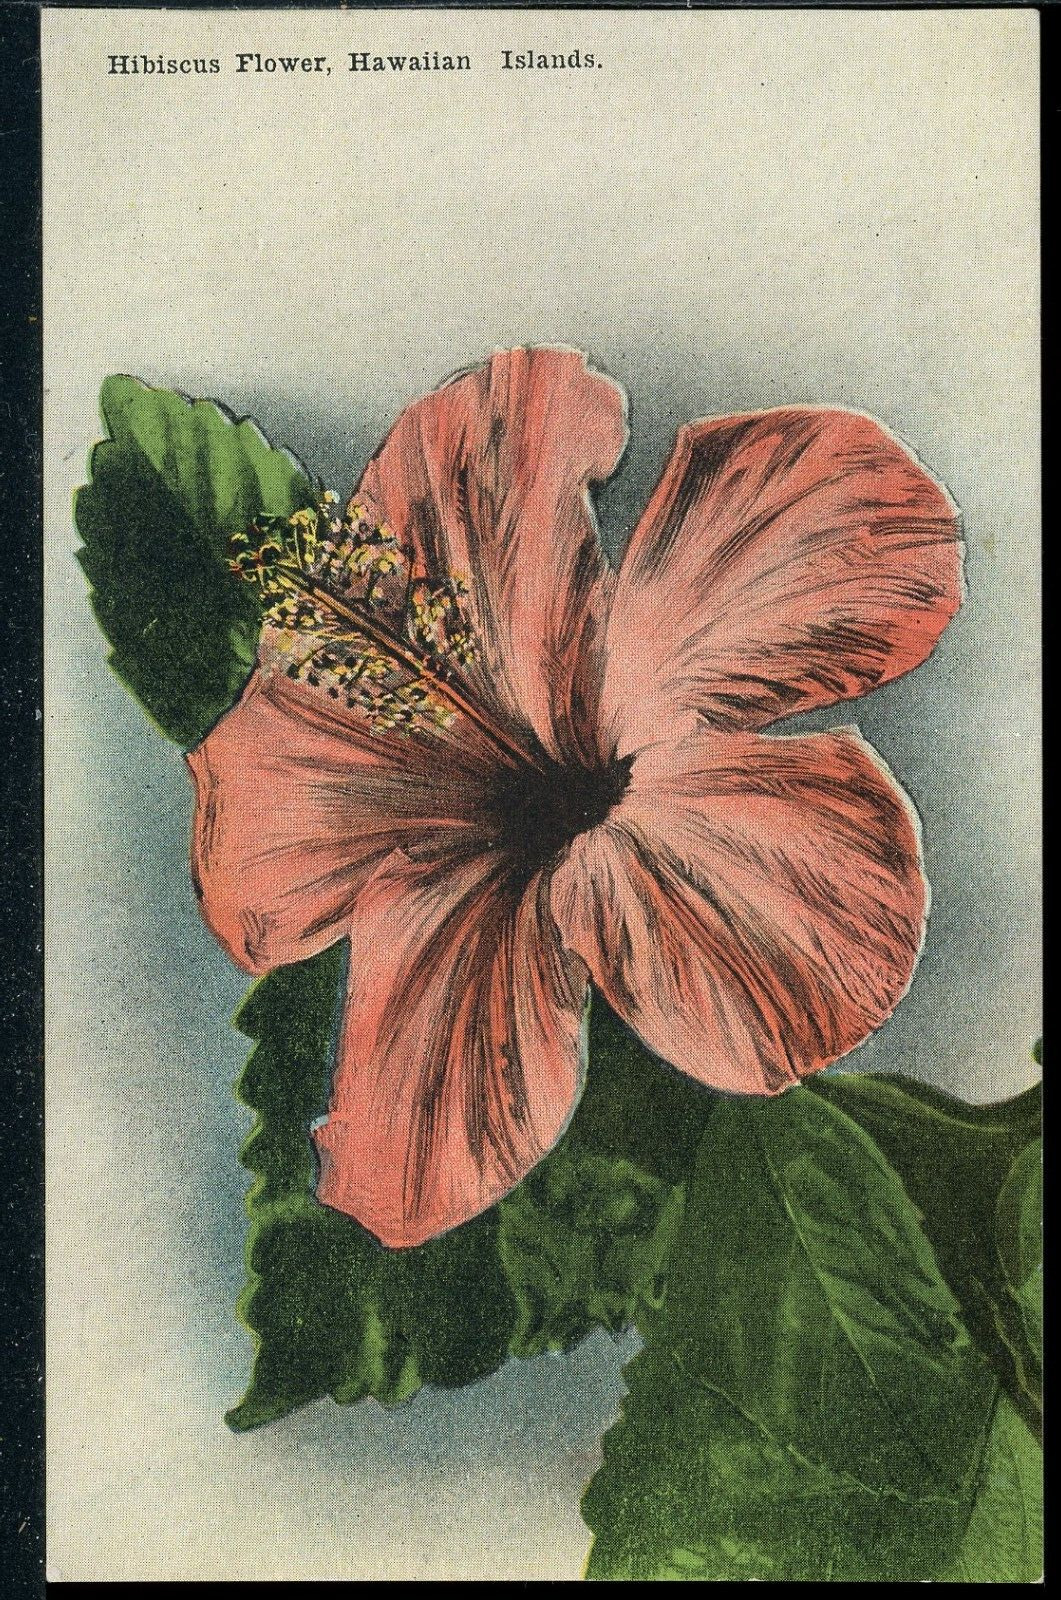 Red Hibiscus Flower Hawaiian Islands Hawaii Vintage Island Curio Postcard